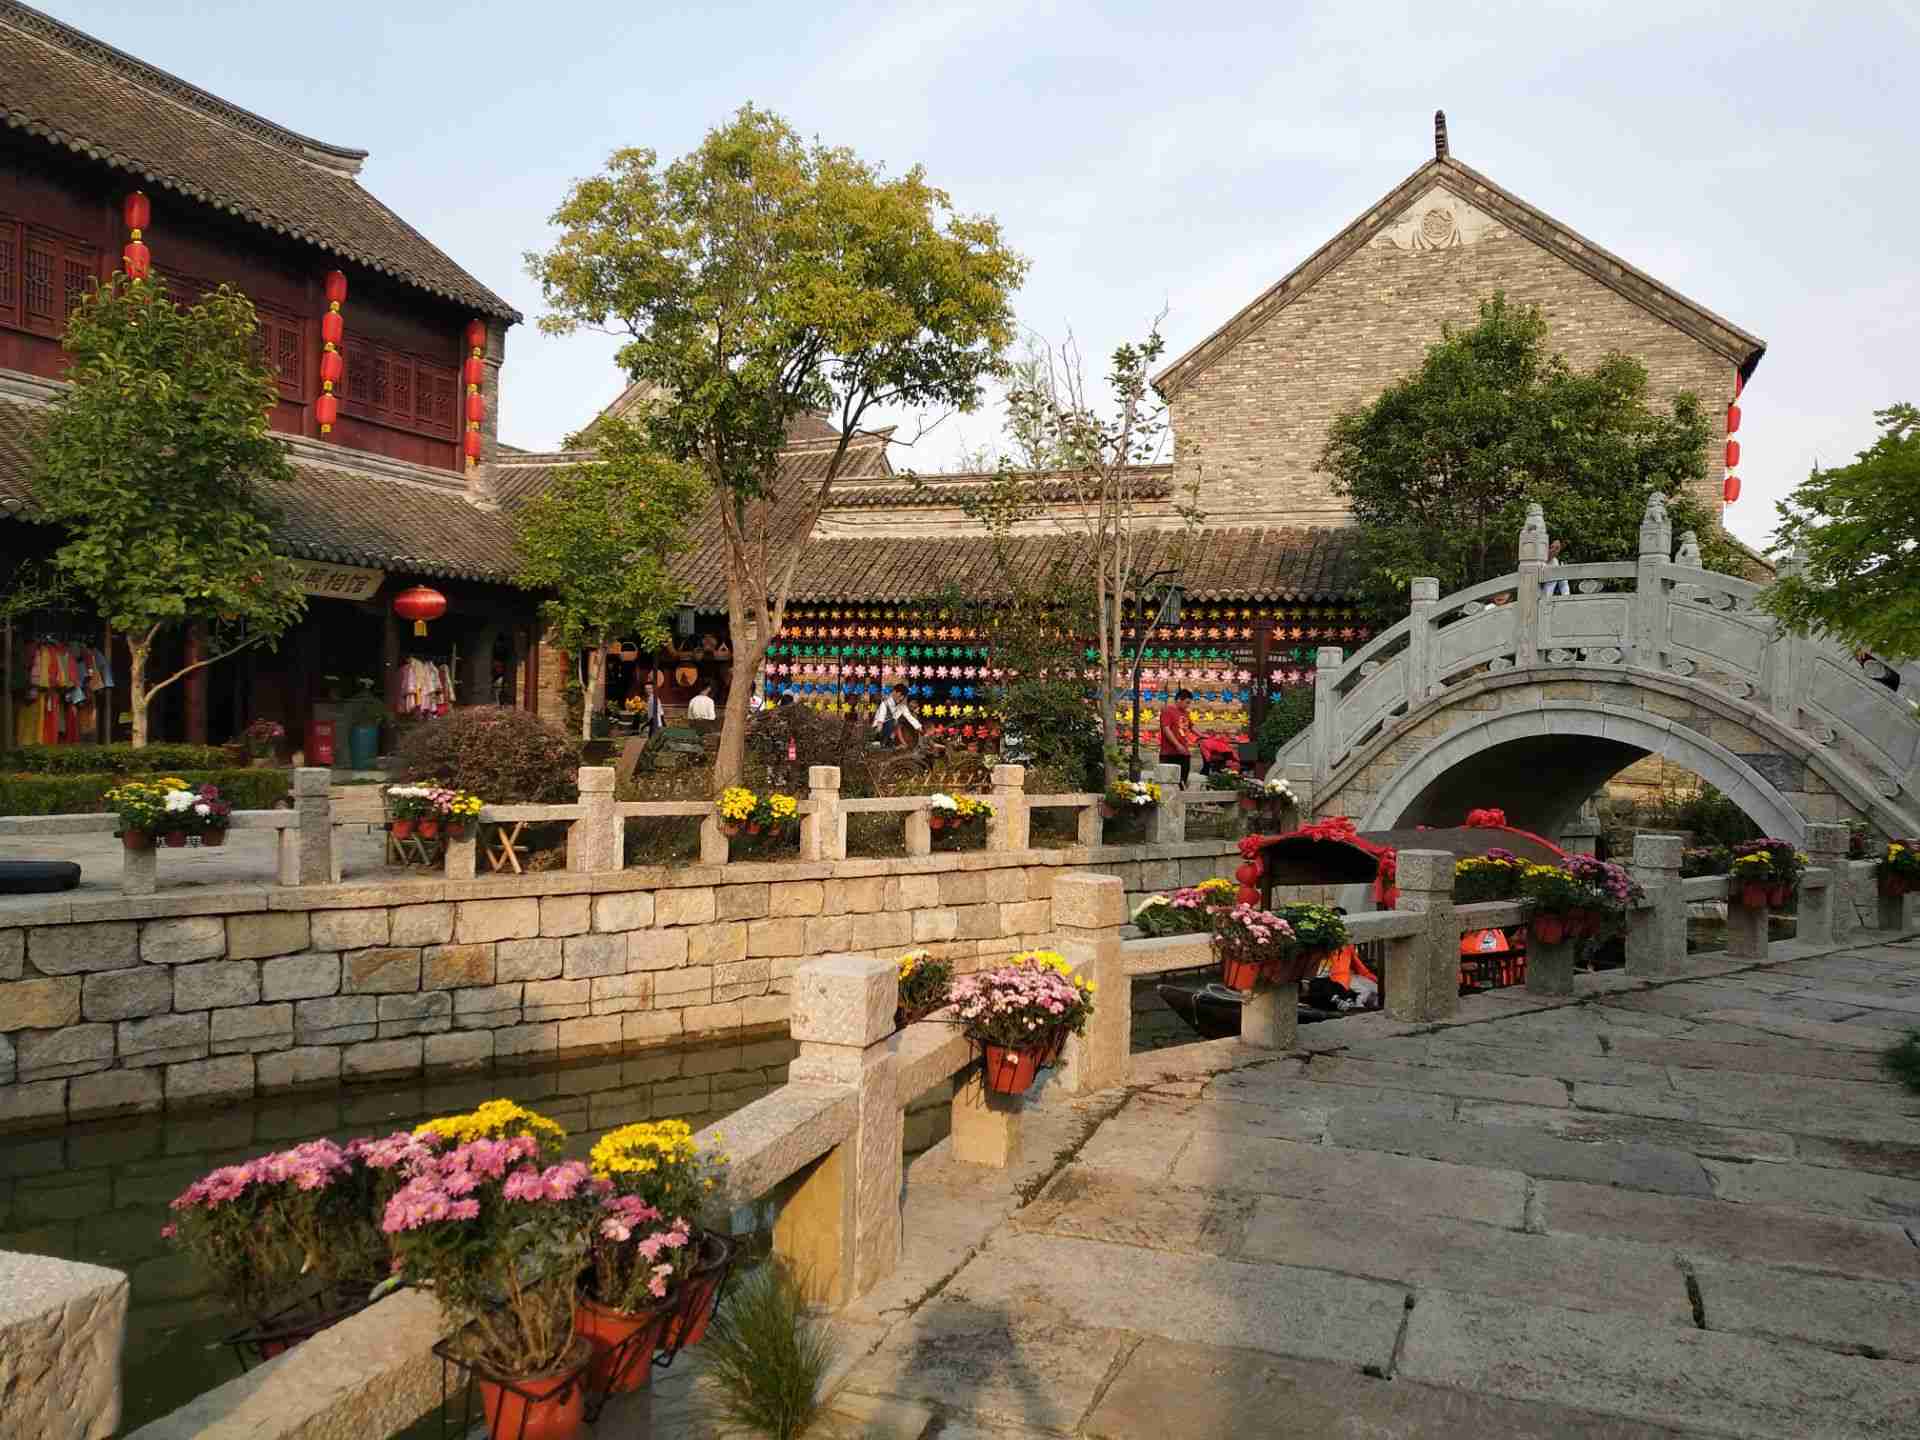 【携程攻略】徐州潘安水镇景点,很有名族风情的地方,不大但还不错